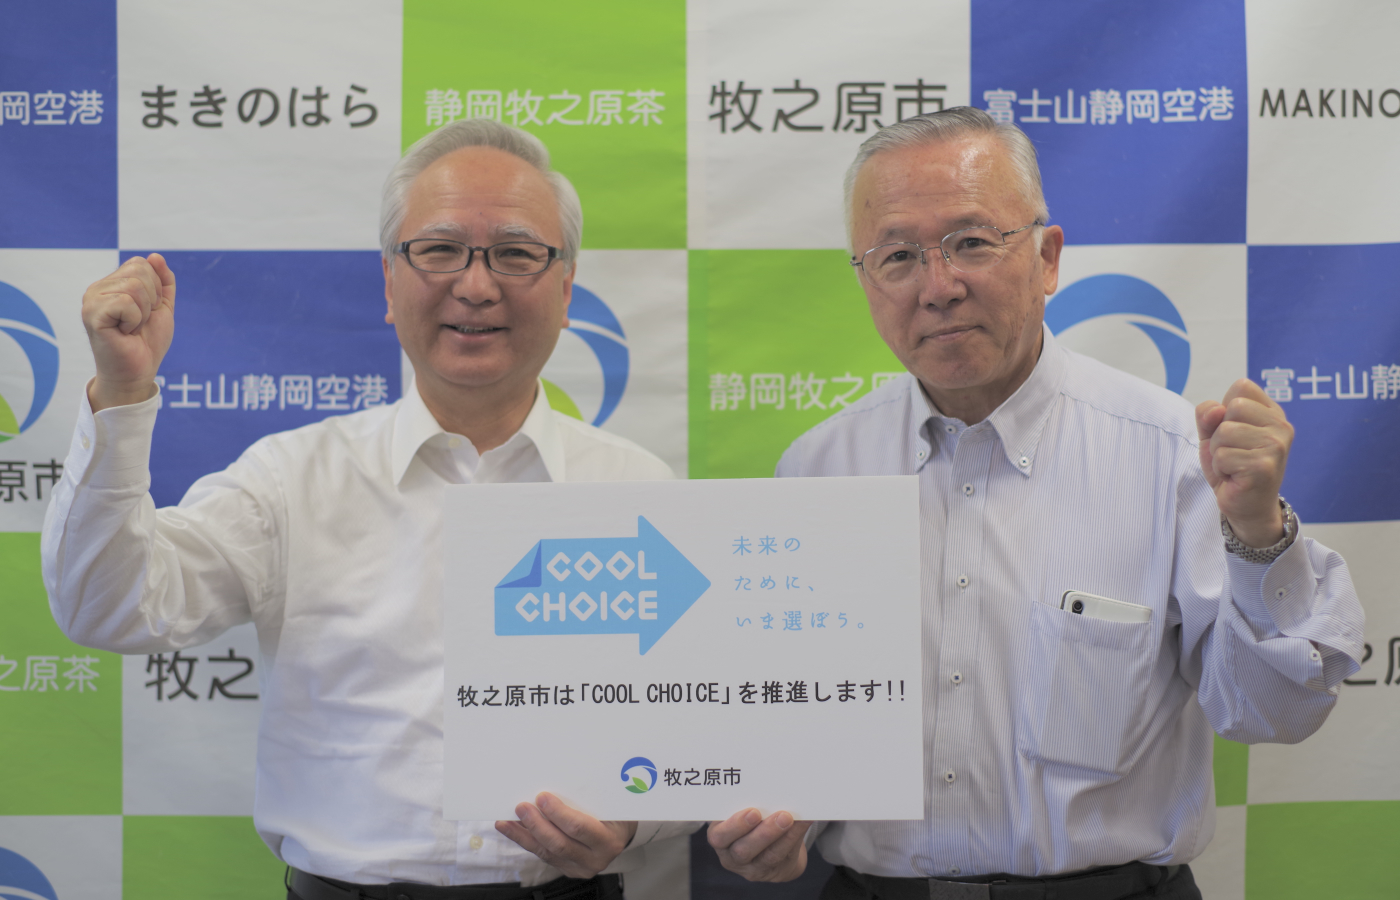 COOL CHOICEの宣言をした西原茂樹市長（左）と杉本基久雄副市長